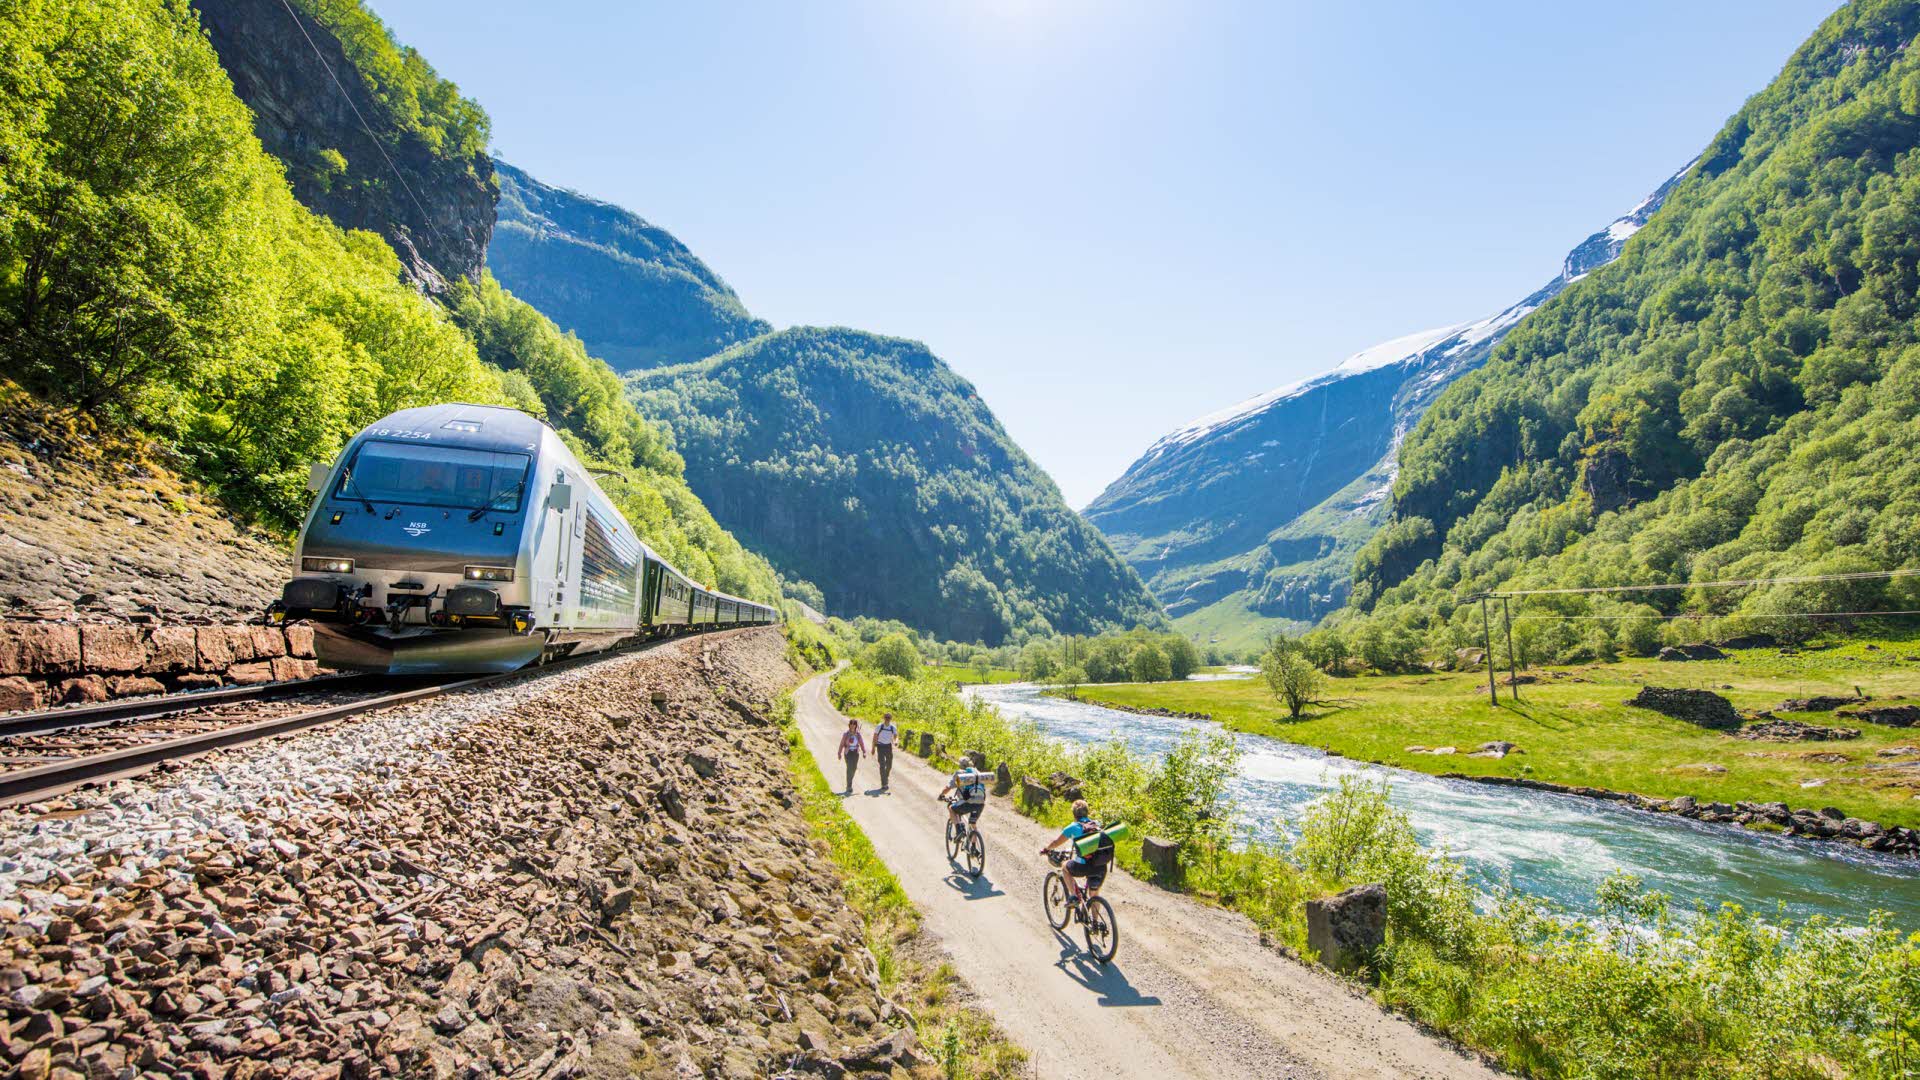 Le train de Flåm dans un paysage d’été, descendant vers la vallée de Flåm.   